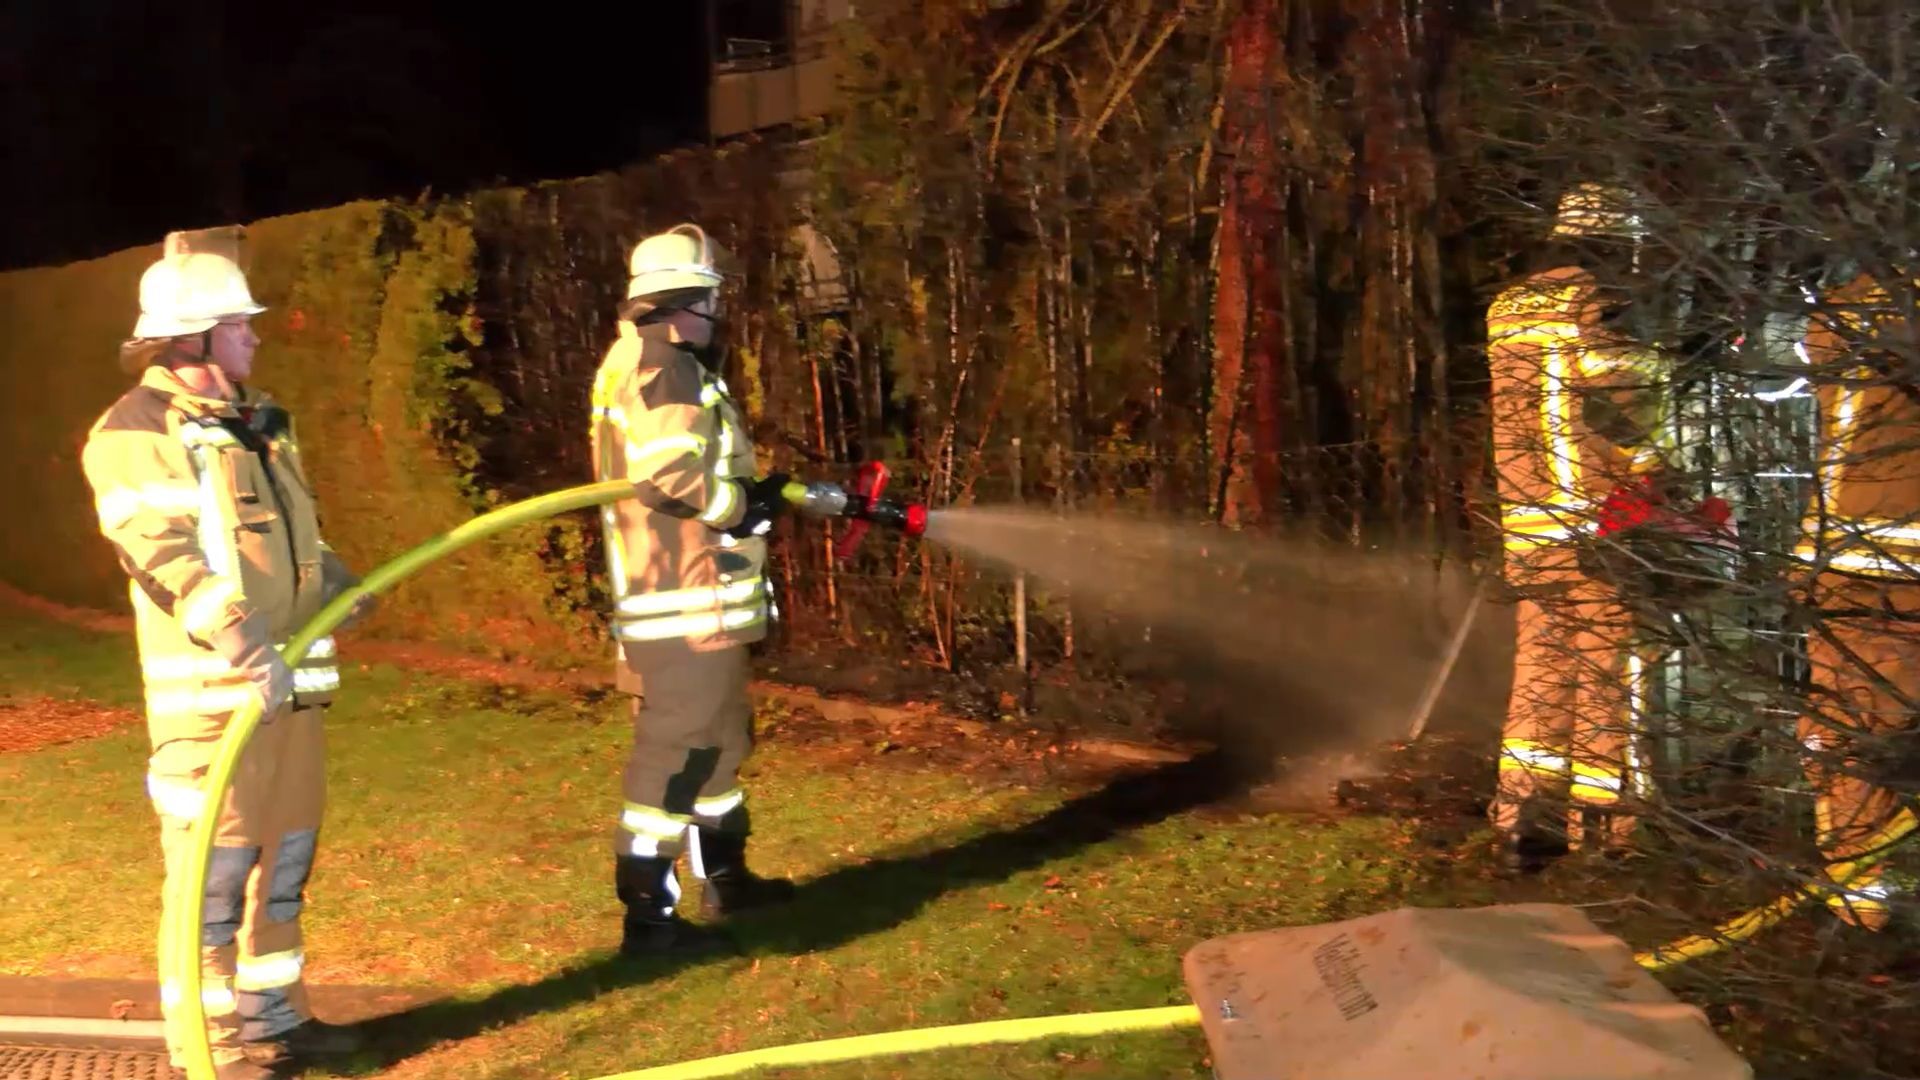 Feuerwehreinsatz vor Silvester: Polizei vermutet Feuerwerksbrand